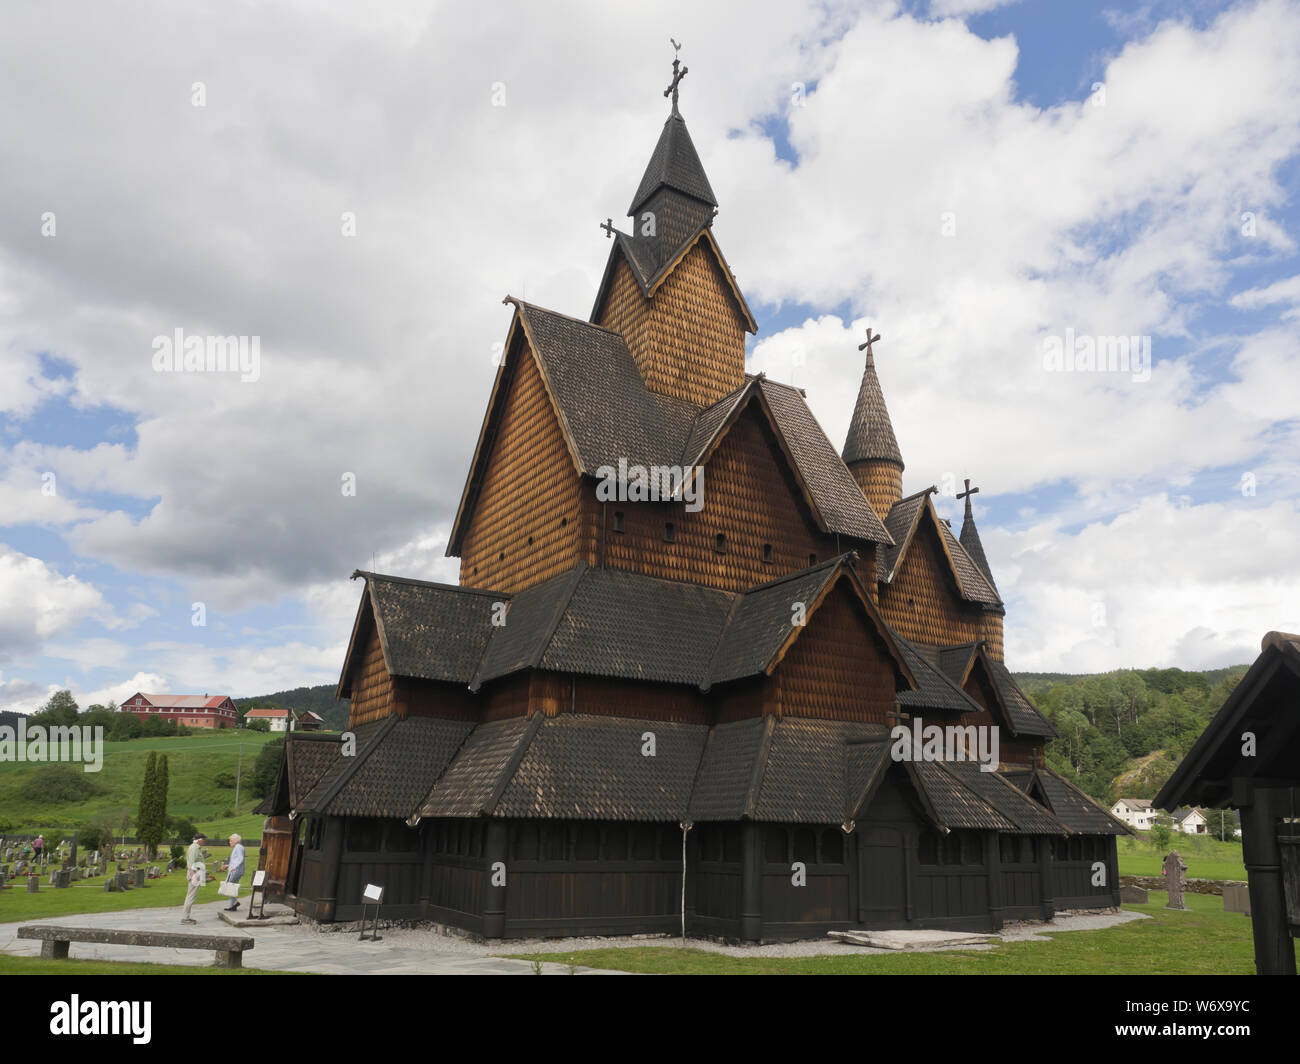 Iglesia Heddal duela desde la época medieval, un excelente ejemplo de la arquitectura de madera de Noruega y una atracción turística Foto de stock